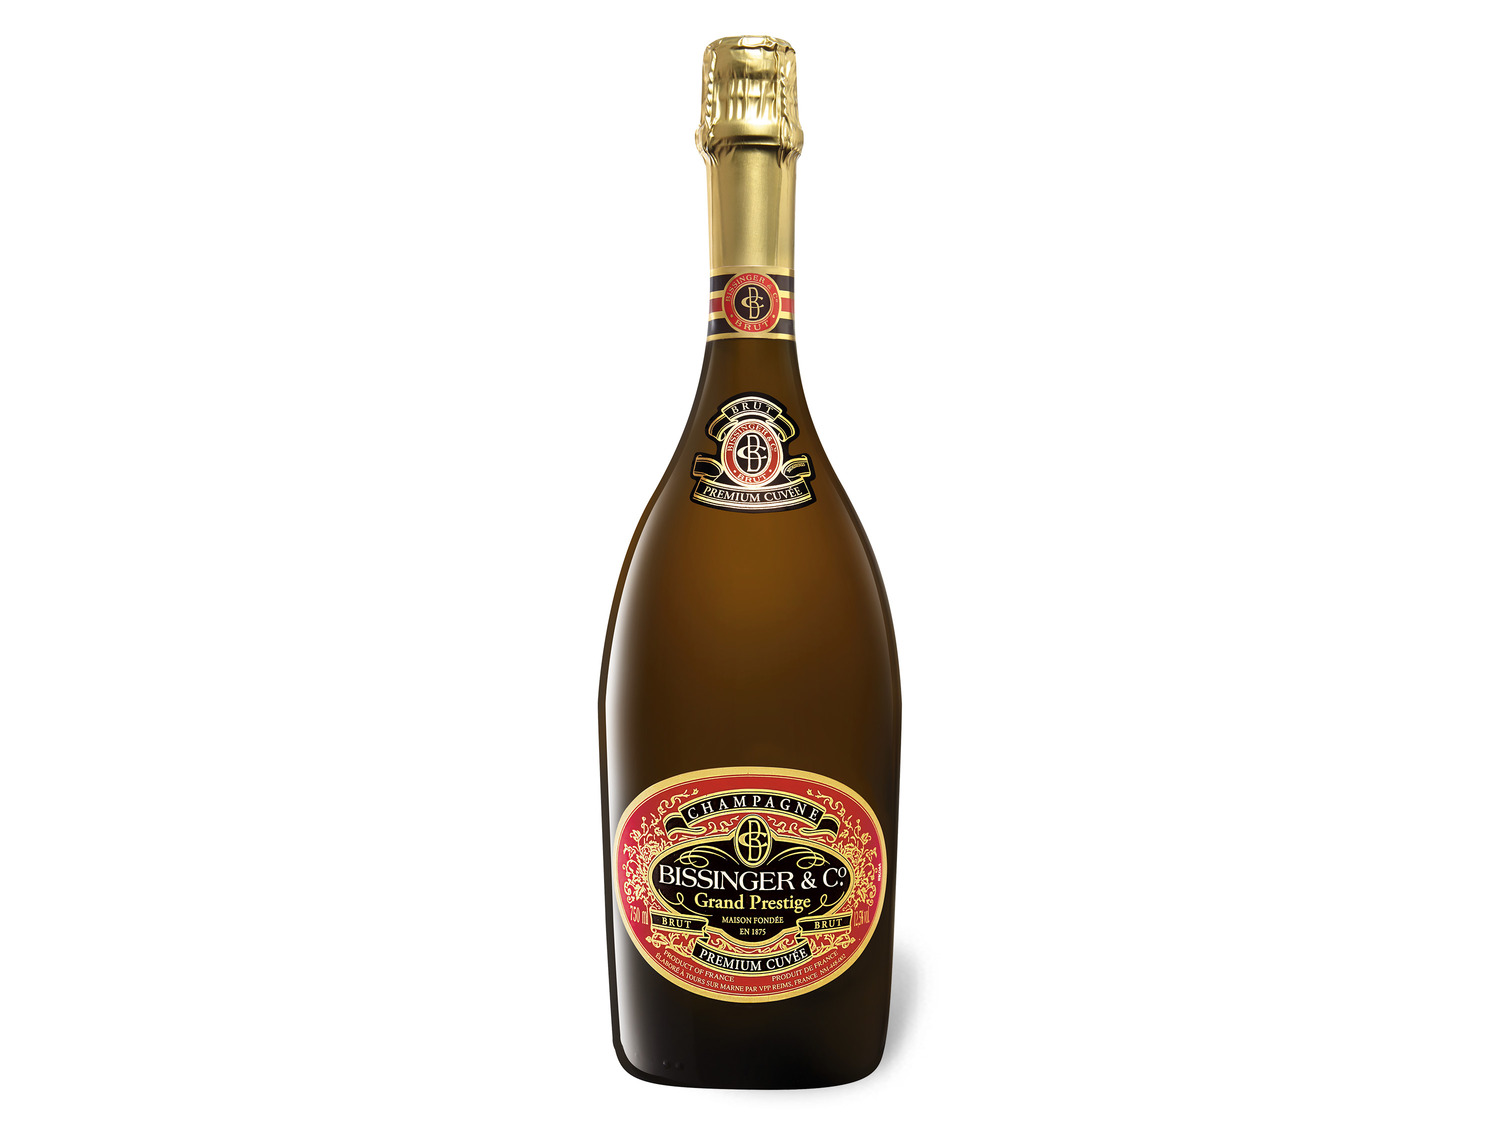 Grand Premium Prestige Cuvée brut, Champagner Bissinger